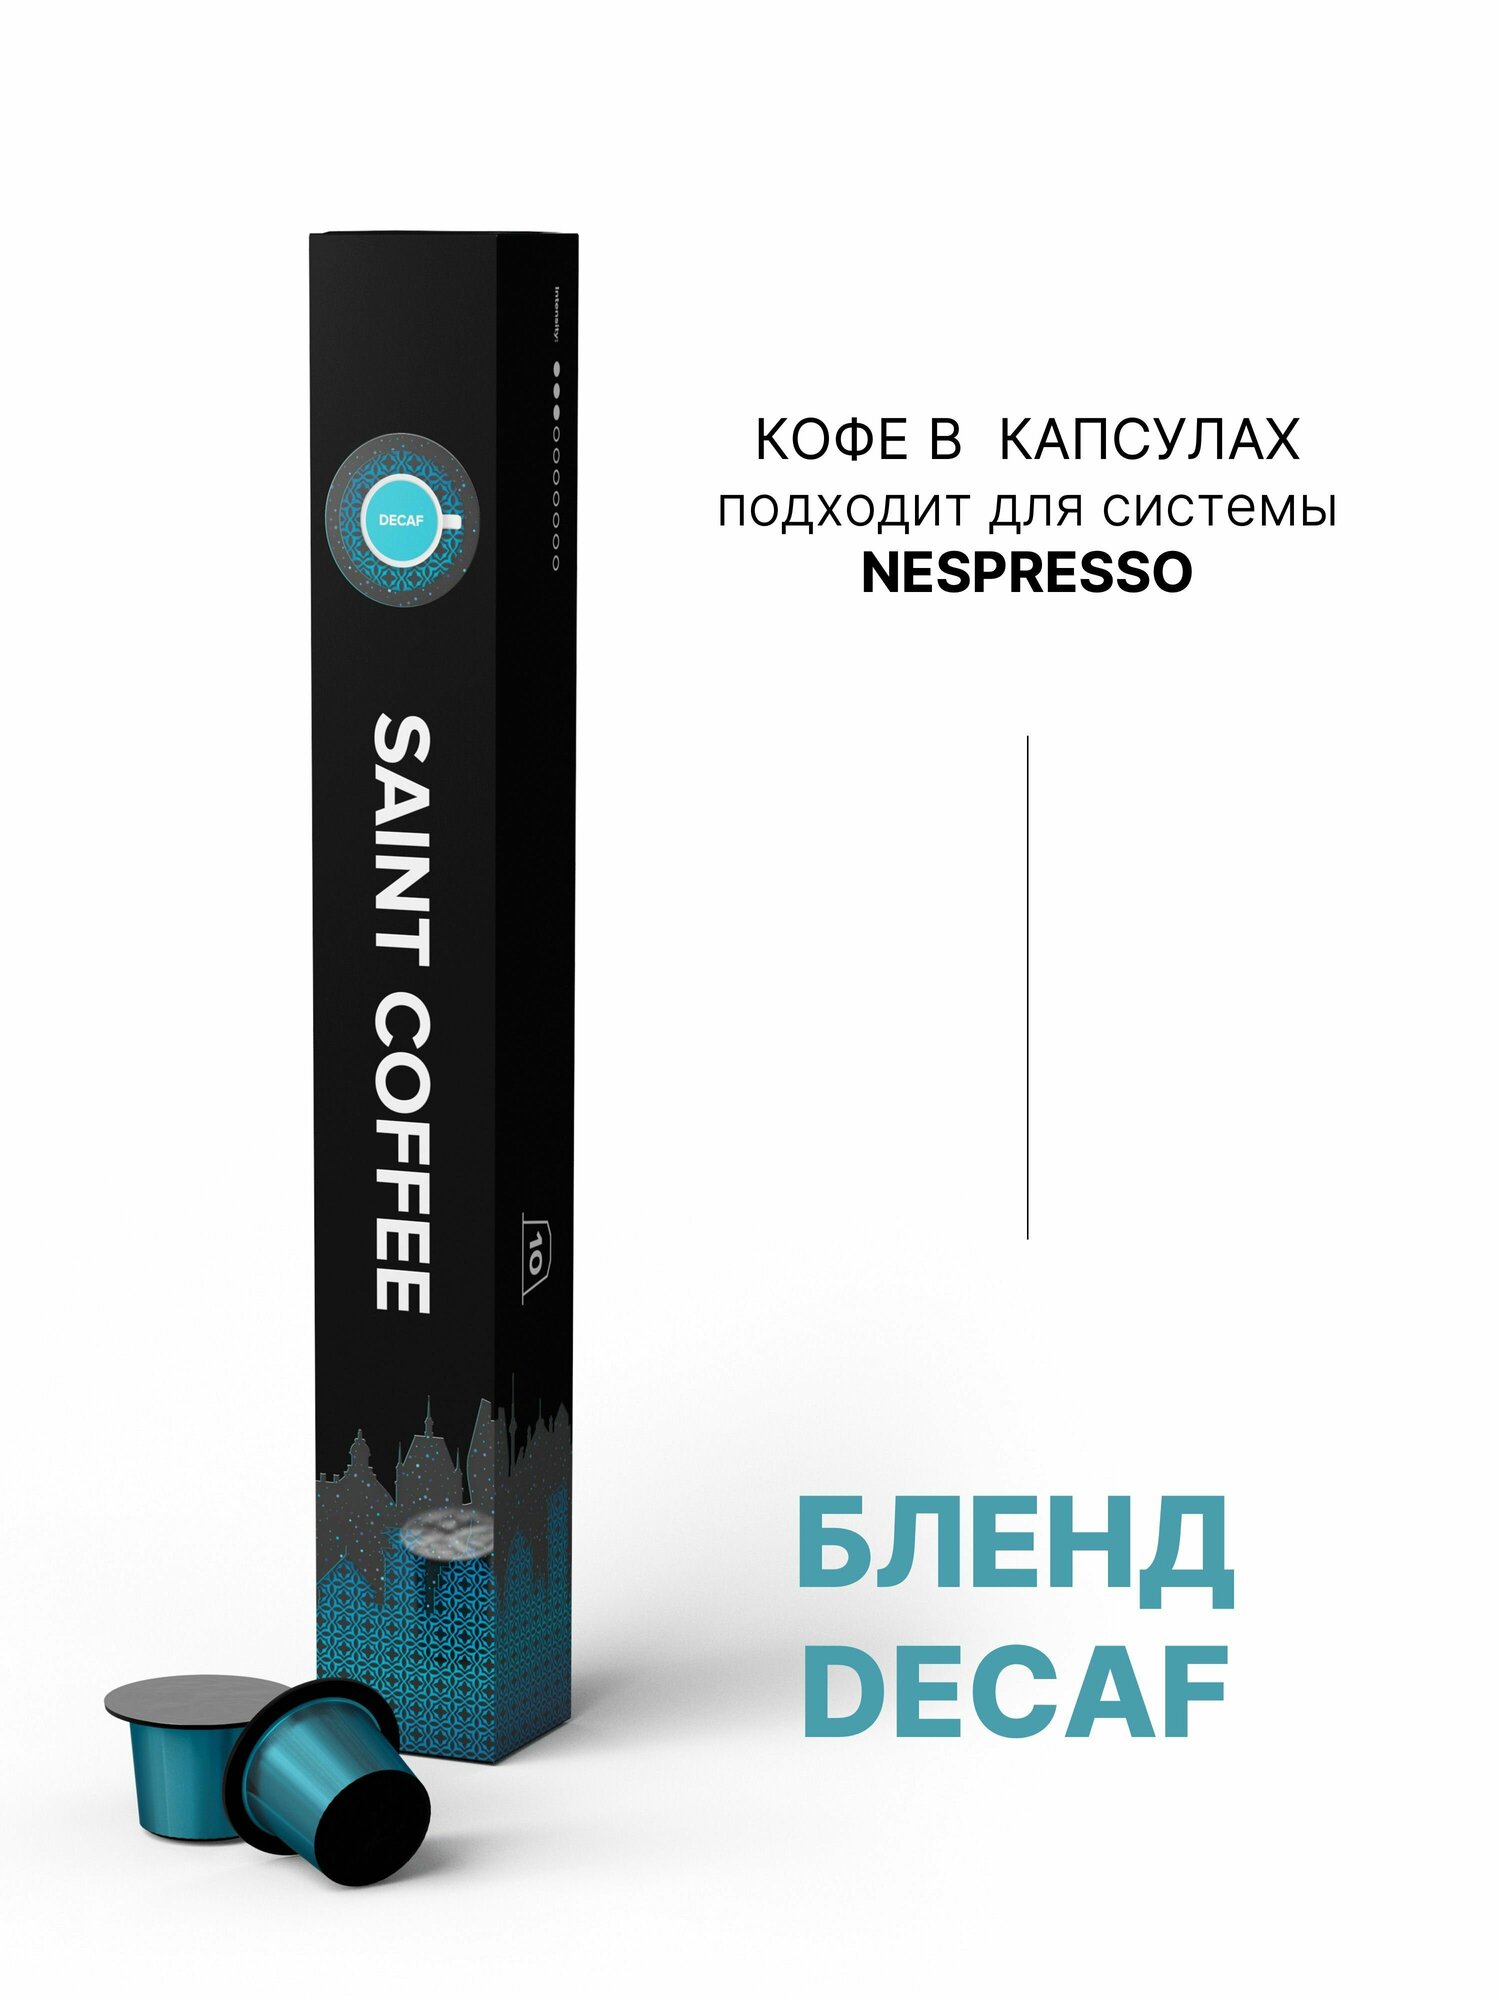 Кофе в капсулах SAINT COFFEE DECAF для кофемашин системы Nespresso - фотография № 9